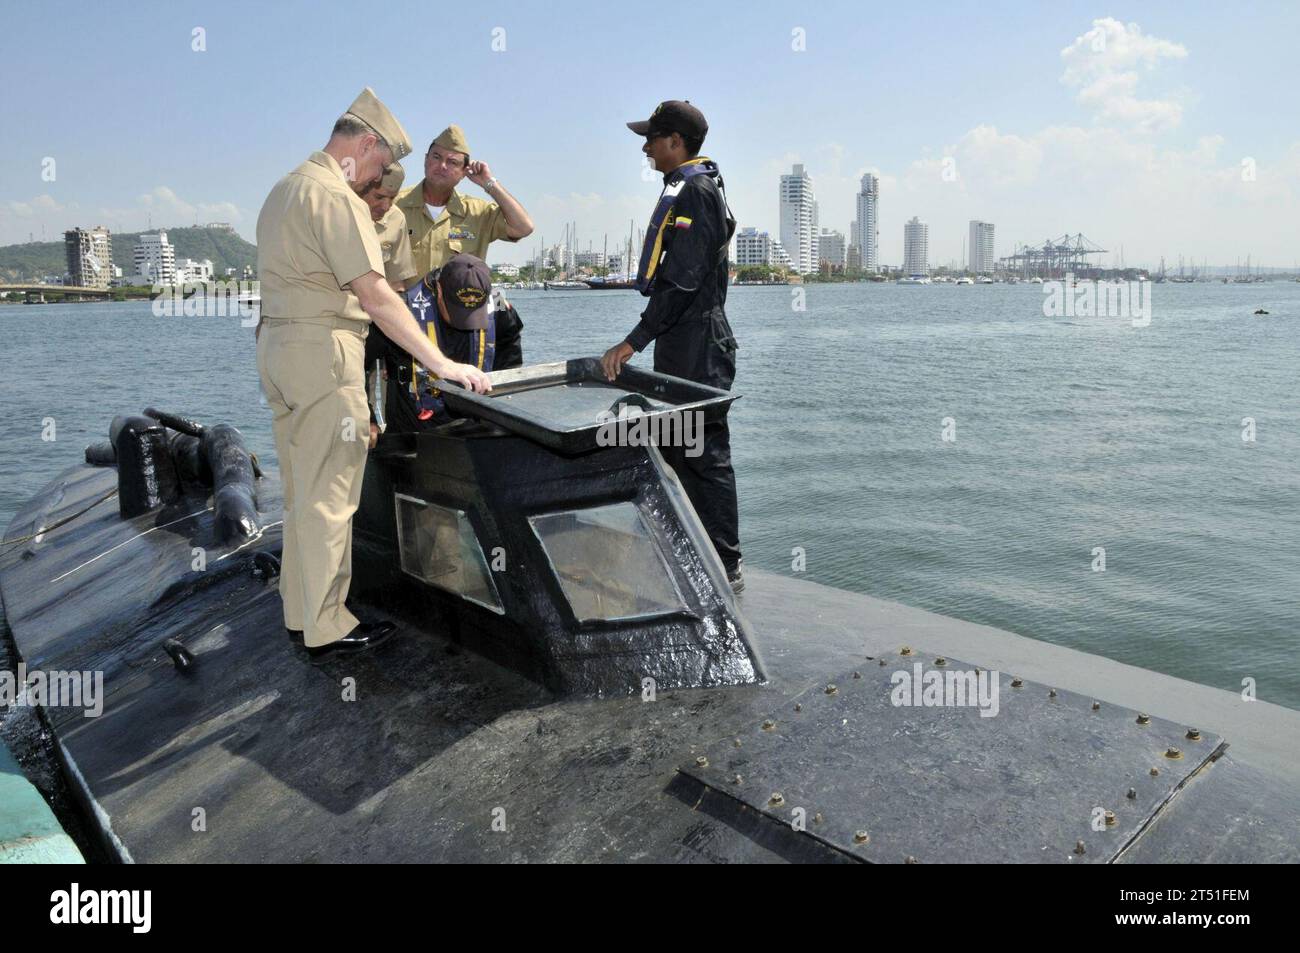 0912058273J-174 CARTAGENA, Kolumbien (5. Dezember 2009) Chief of Naval Operations (CNO) ADM. Gary Roughead, links, tourt auf einem halbem U-Boot, während er sich auf der Marinebasis Bolivar mit kolumbianischen Küstenwachtkräften trifft. Das Boot wurde von Drogenschmugglern in der Karibik beschlagnahmt. Marineblau Stockfoto